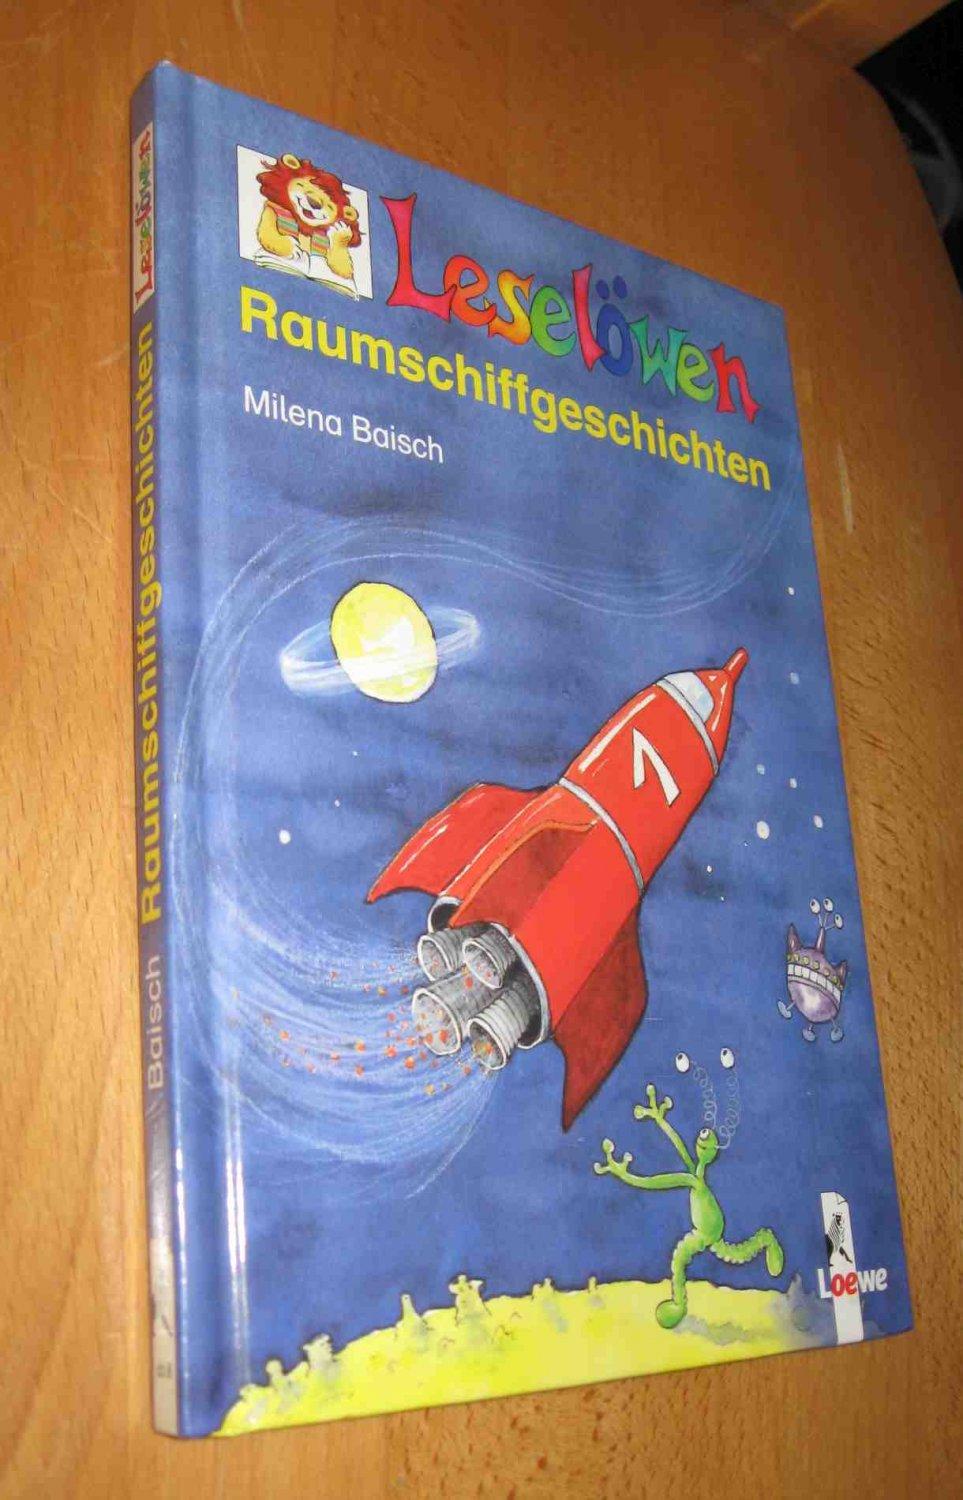 Leselöwen : Raumschiffgeschichten - Baisch, Milena